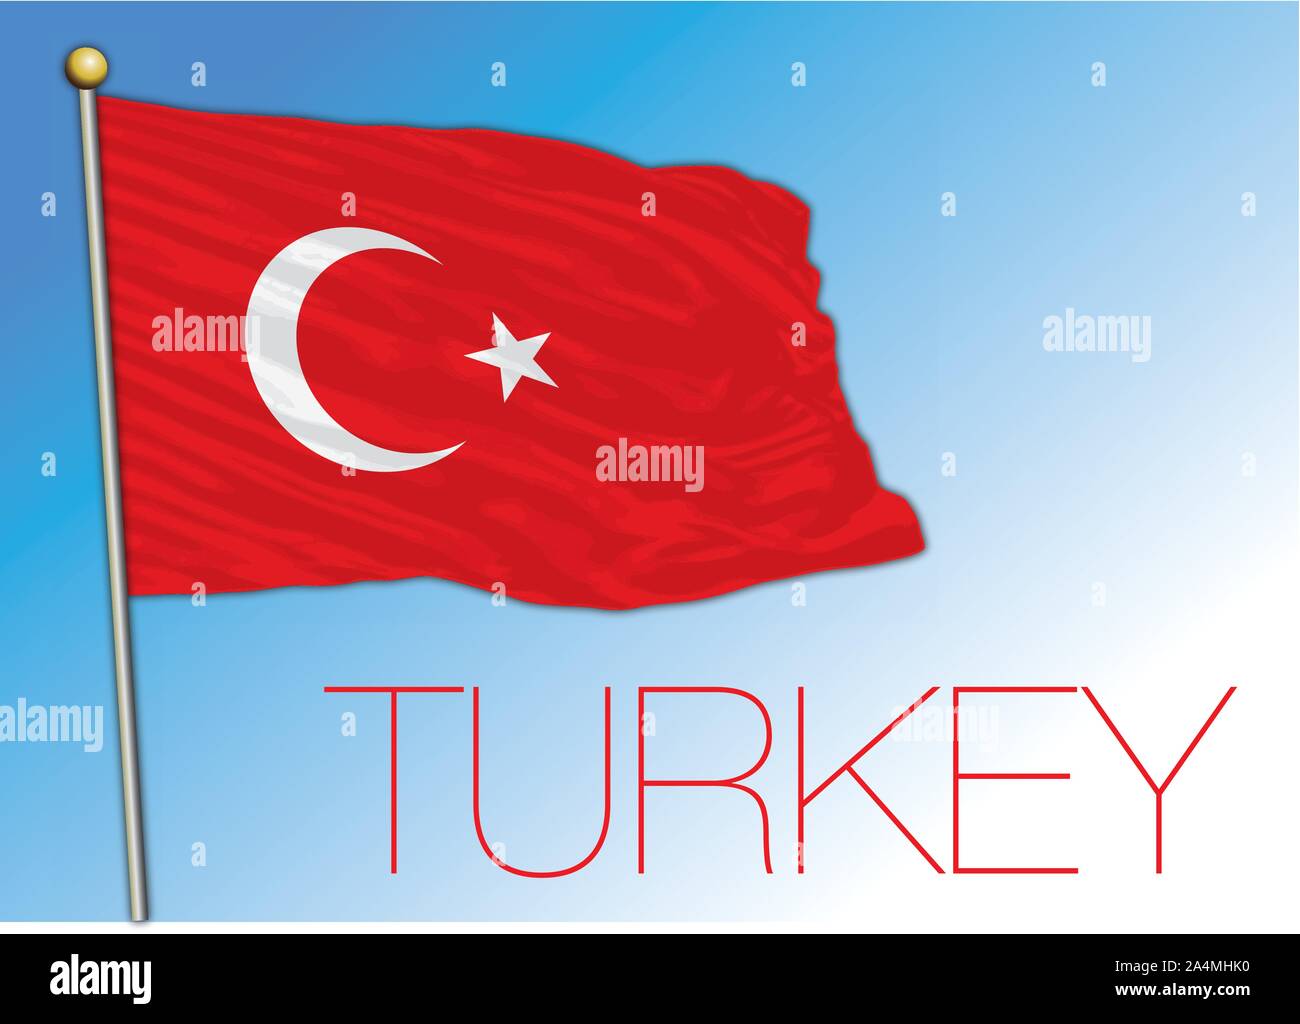 Turkey official flag, vector illustration Stock Vector